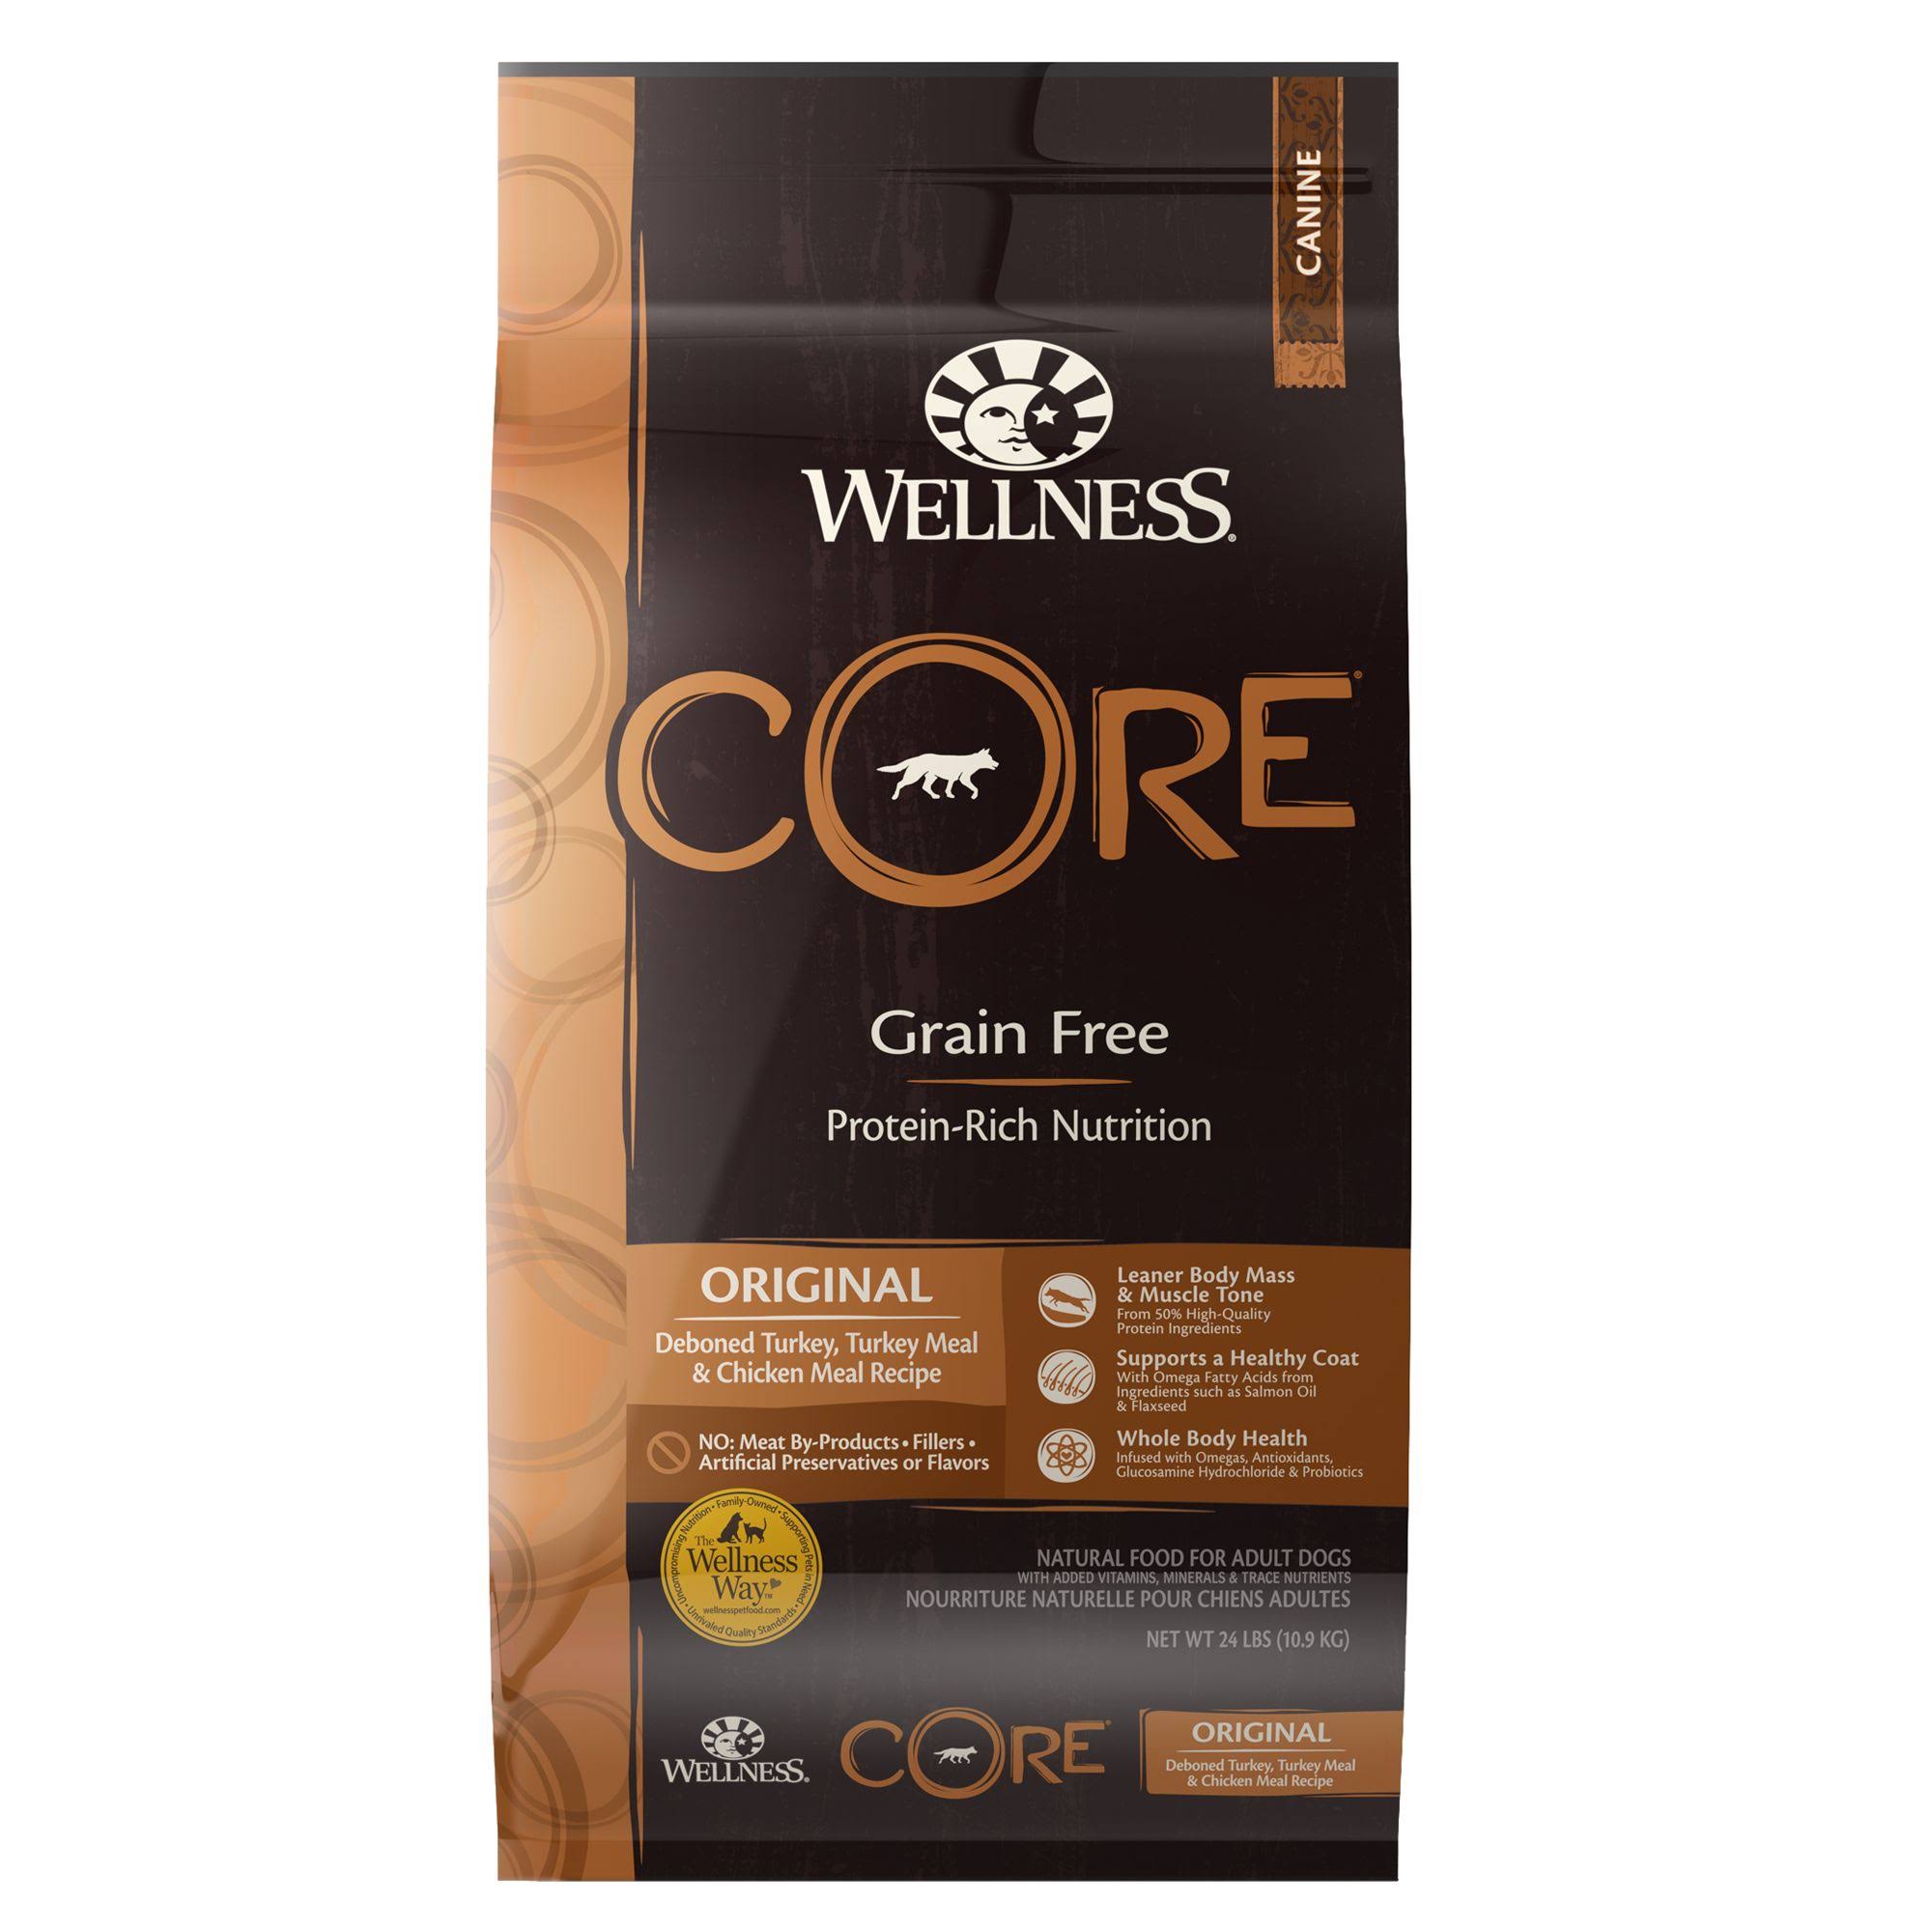 Wellness Core Original Formula Dog Food